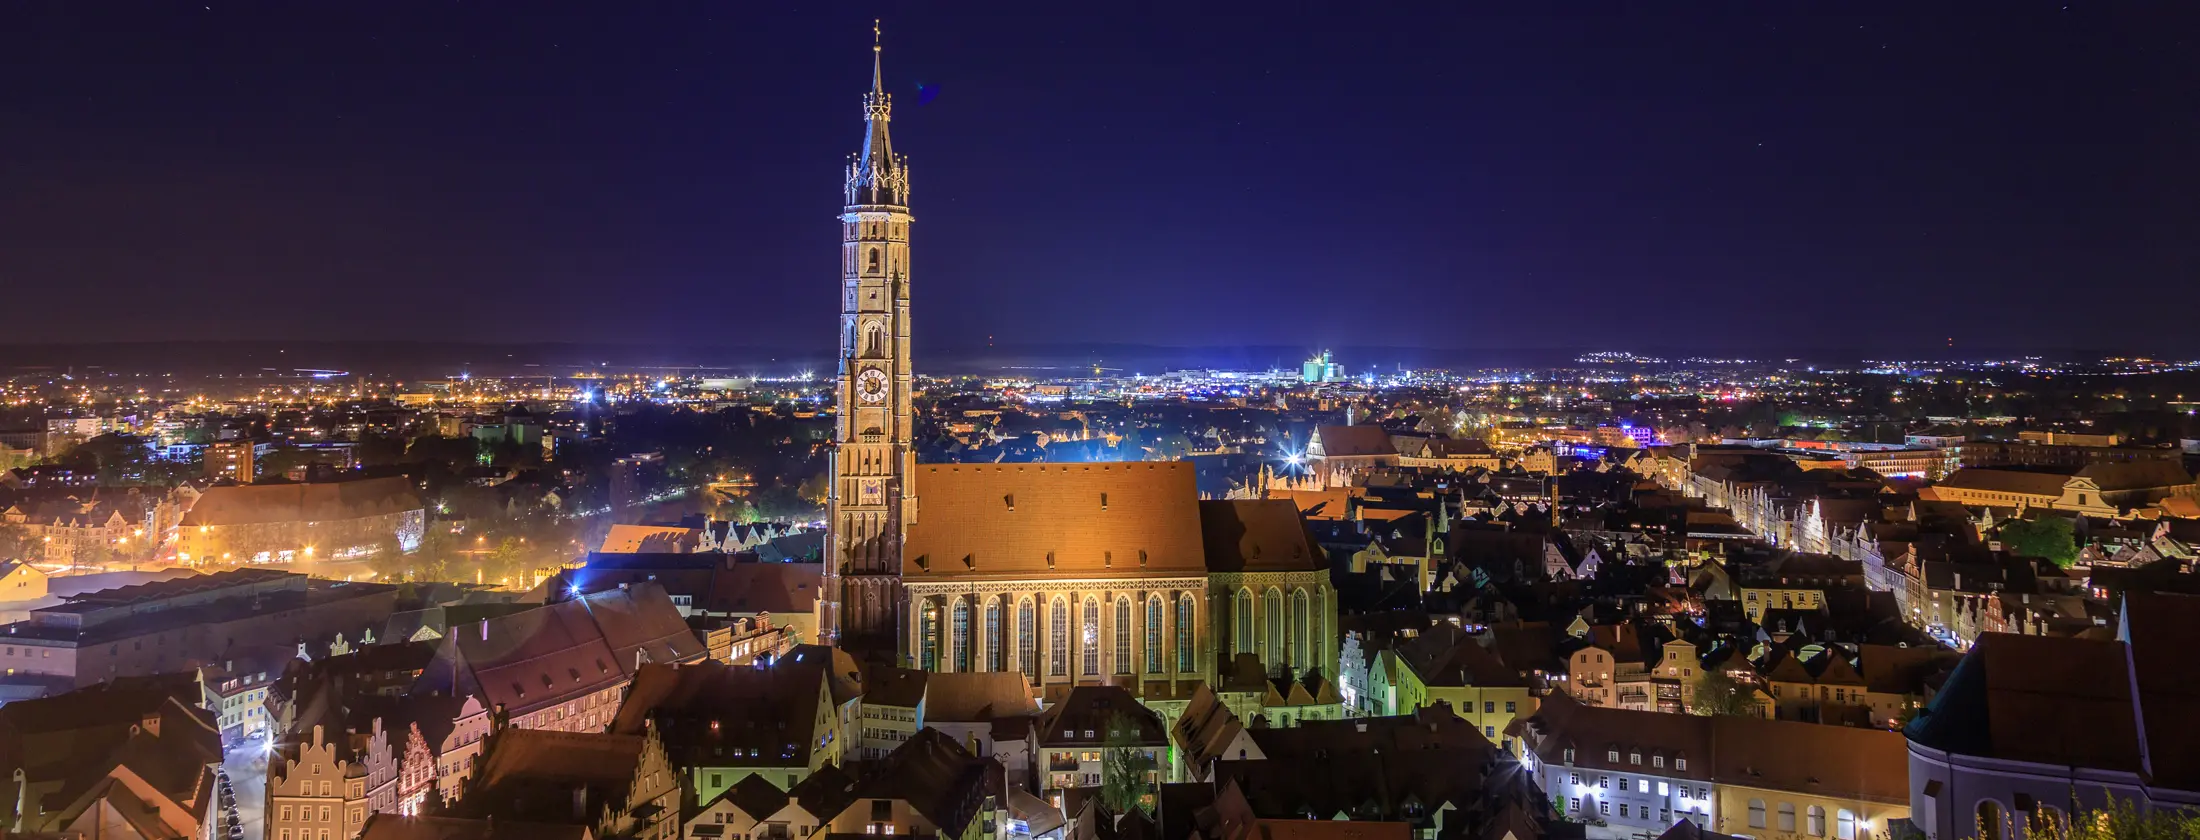 Blick auf Landshut bei Nacht, in der Mitte die Martinskirche